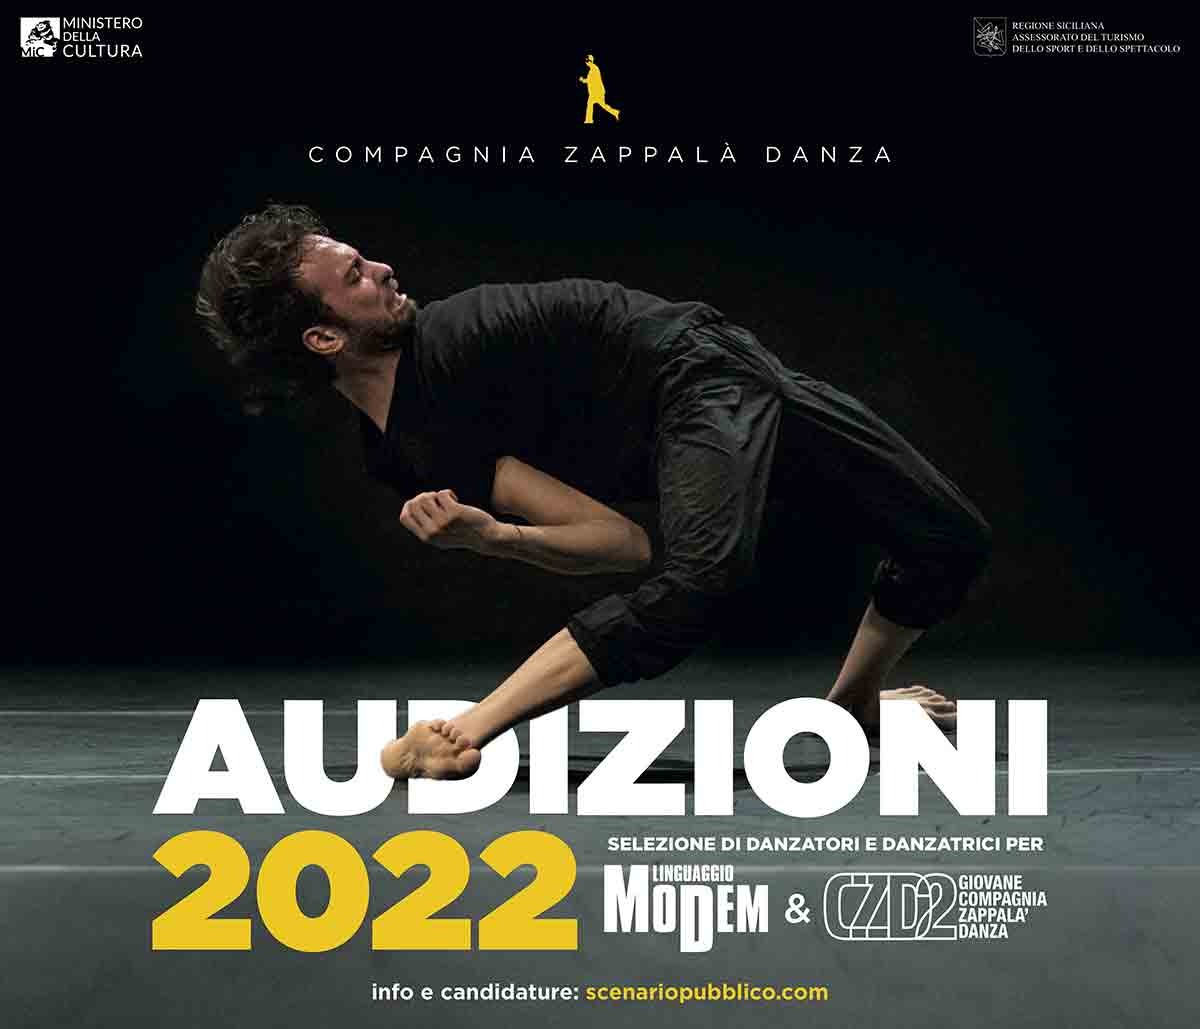 Audizioni 2022 Compagnia Zappalà Danza